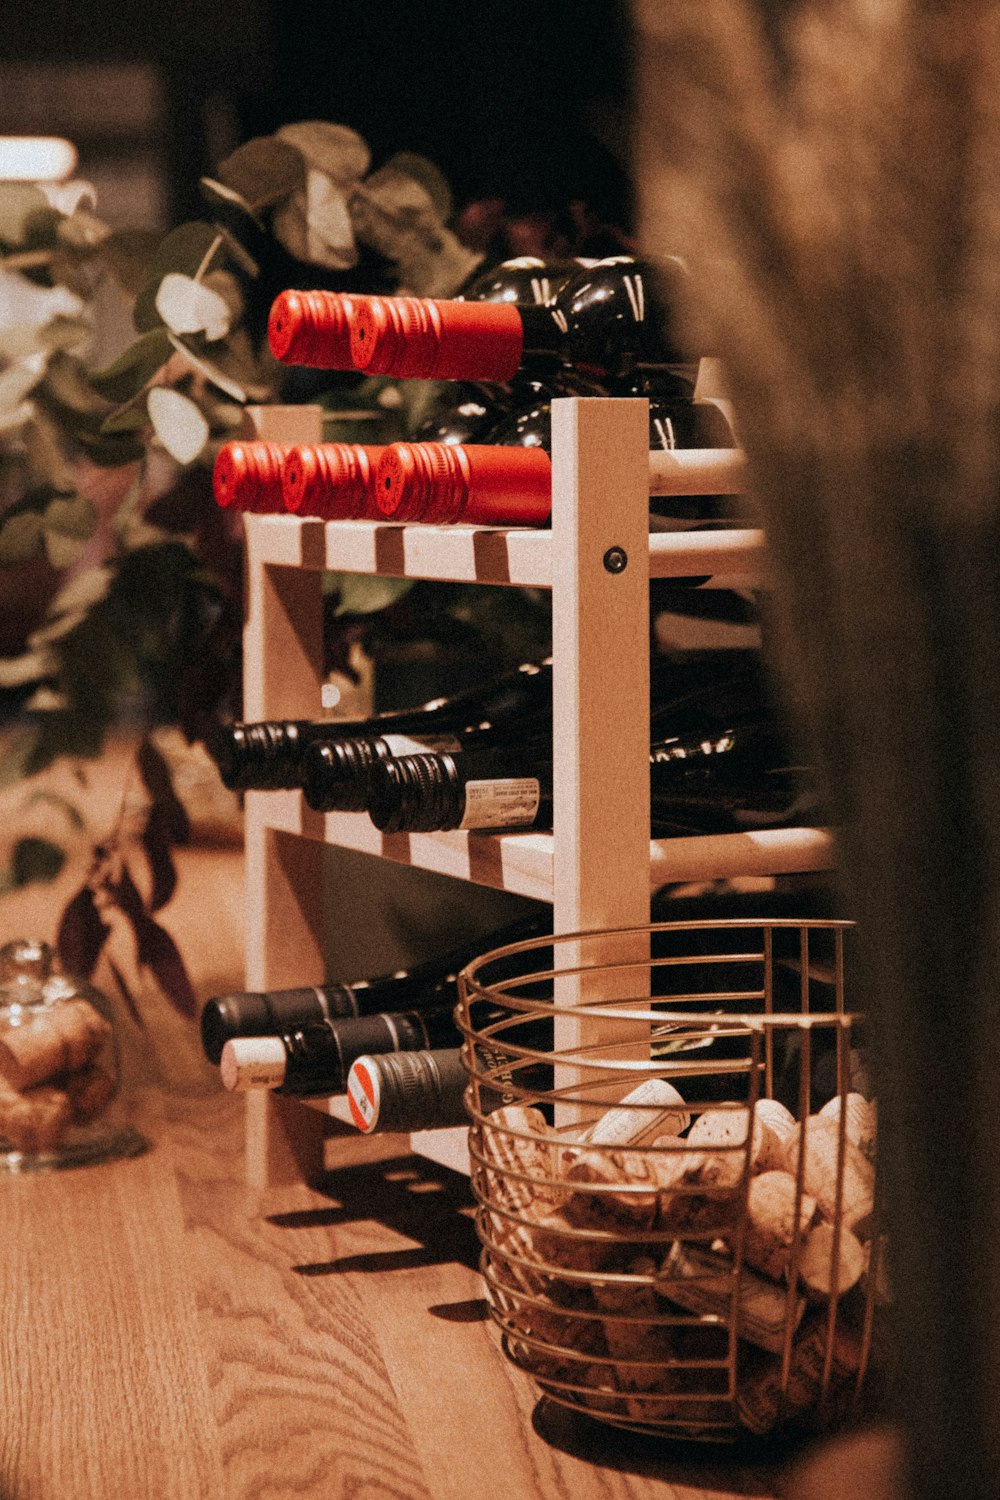 brown wine corks in steel basket near wine bottles on shelf